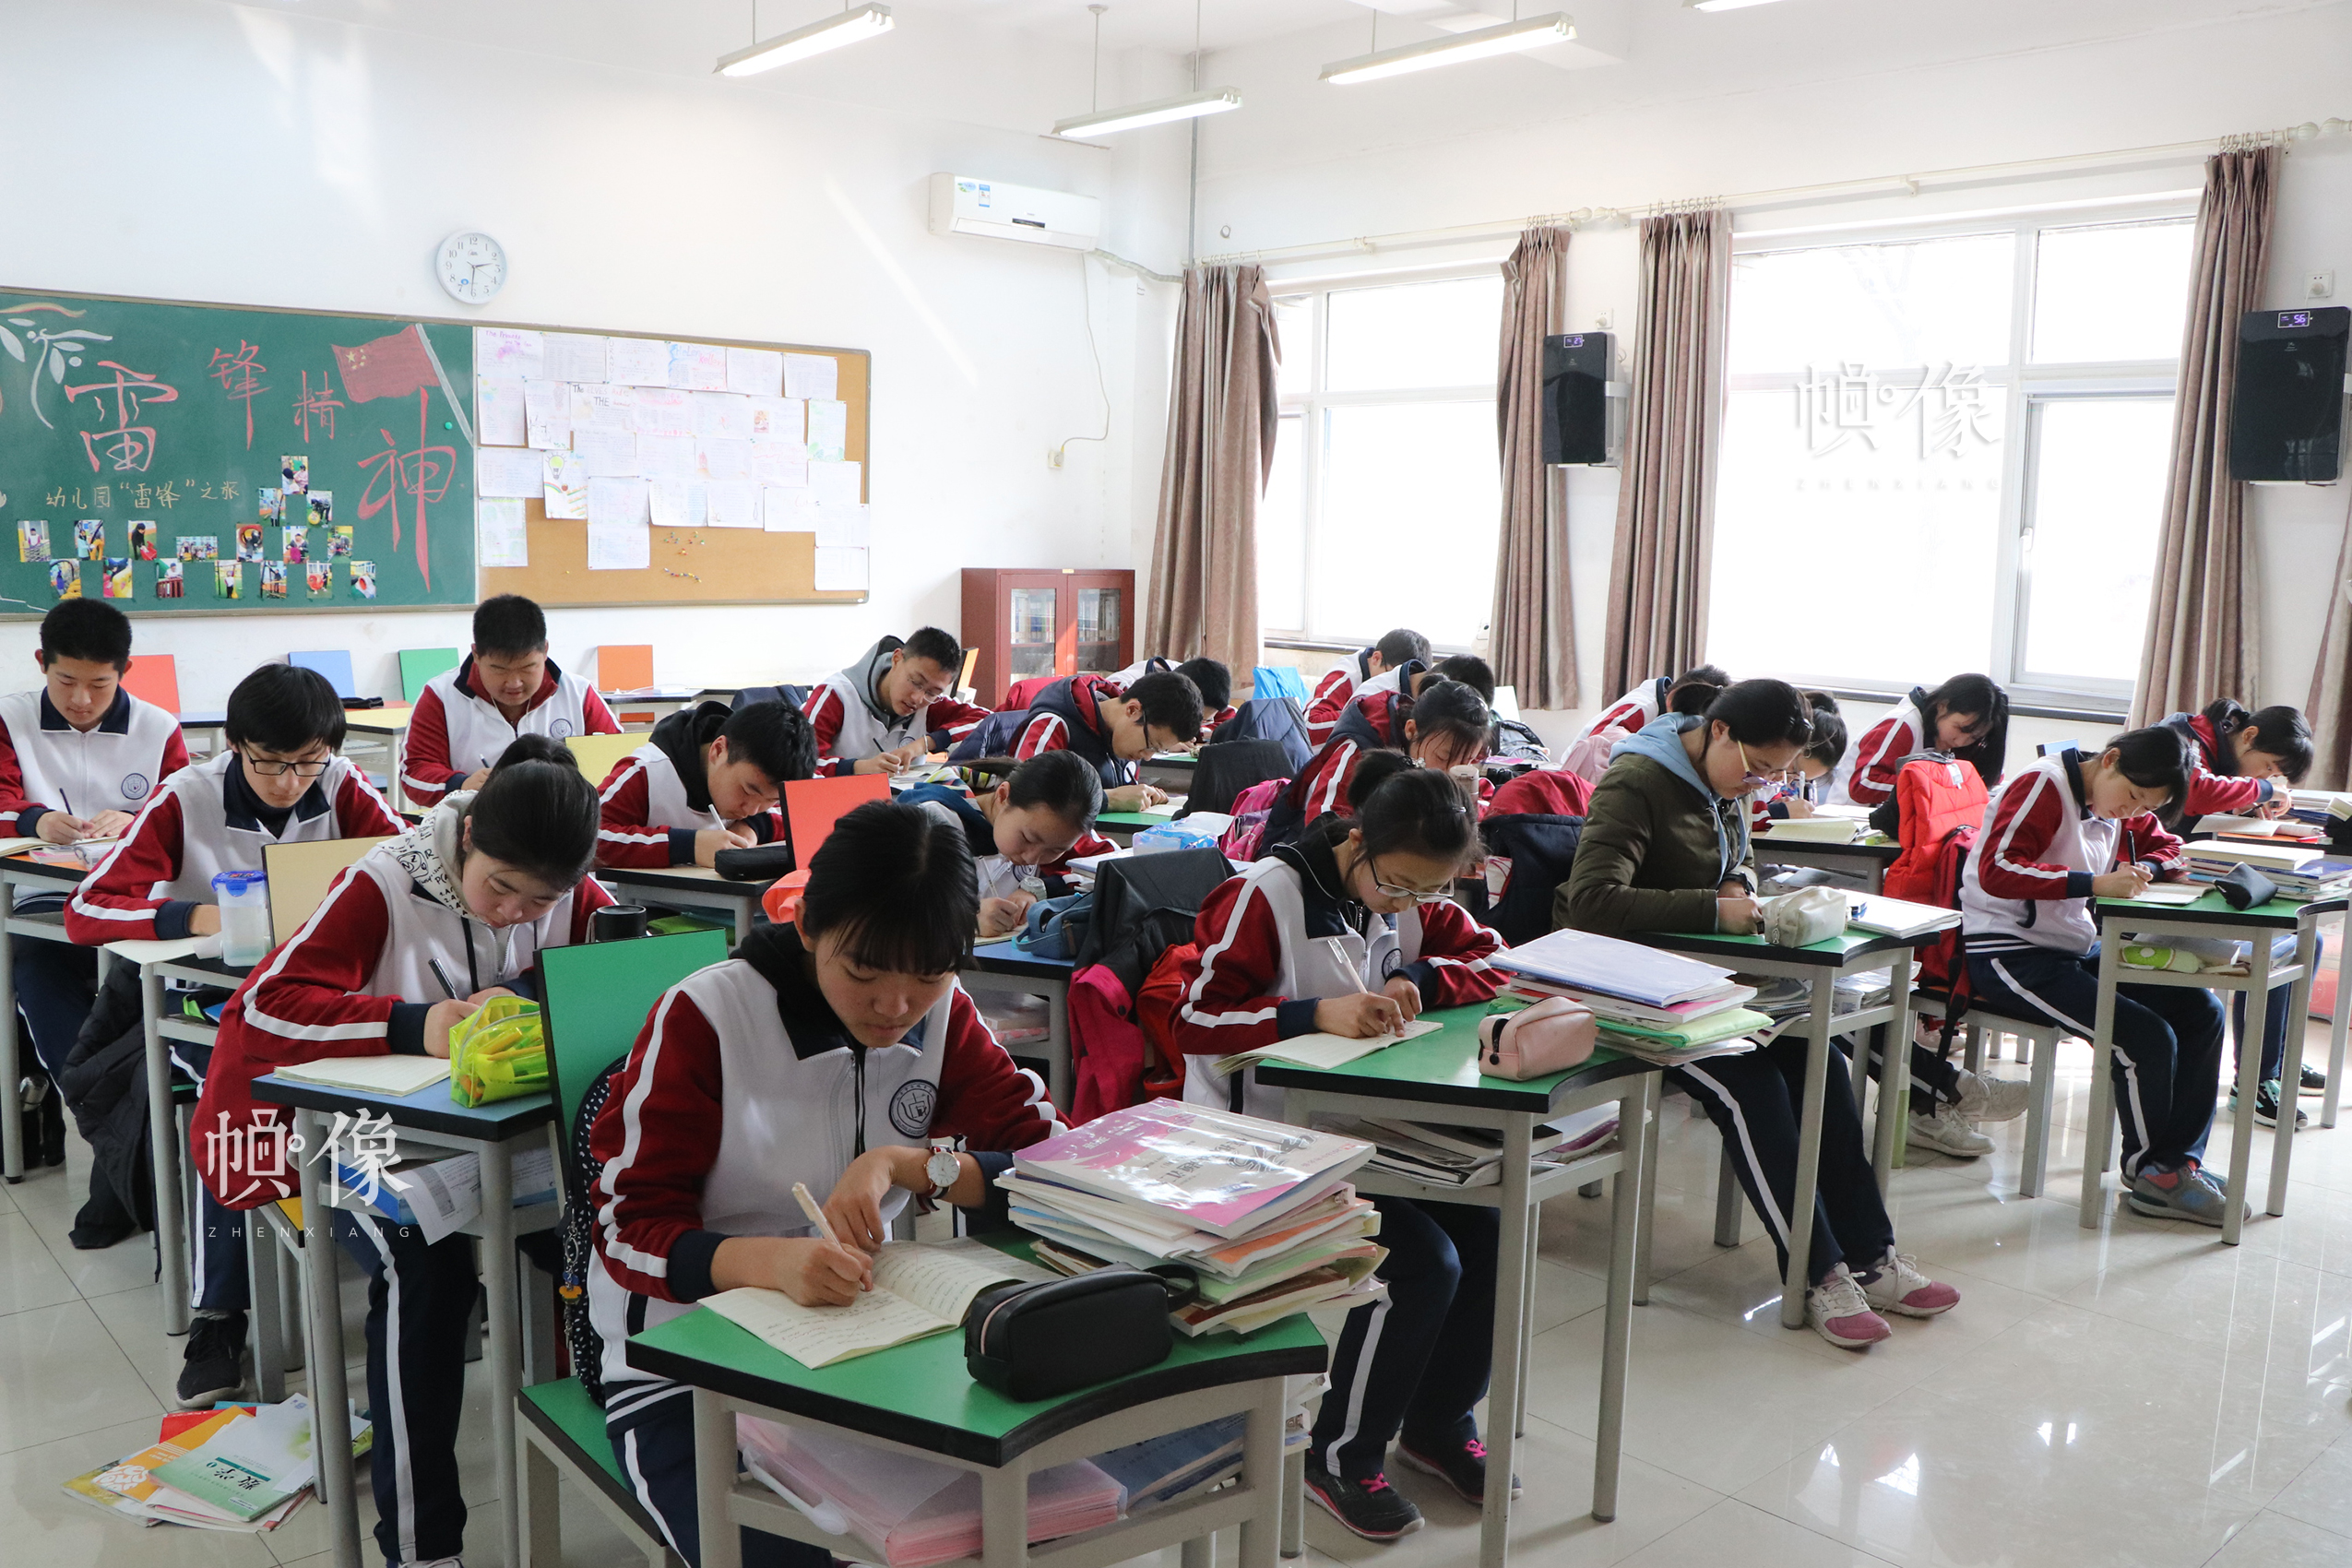 北京市石景山區某中學，課堂上學生認真學習。中國網實習記者 韓依 攝